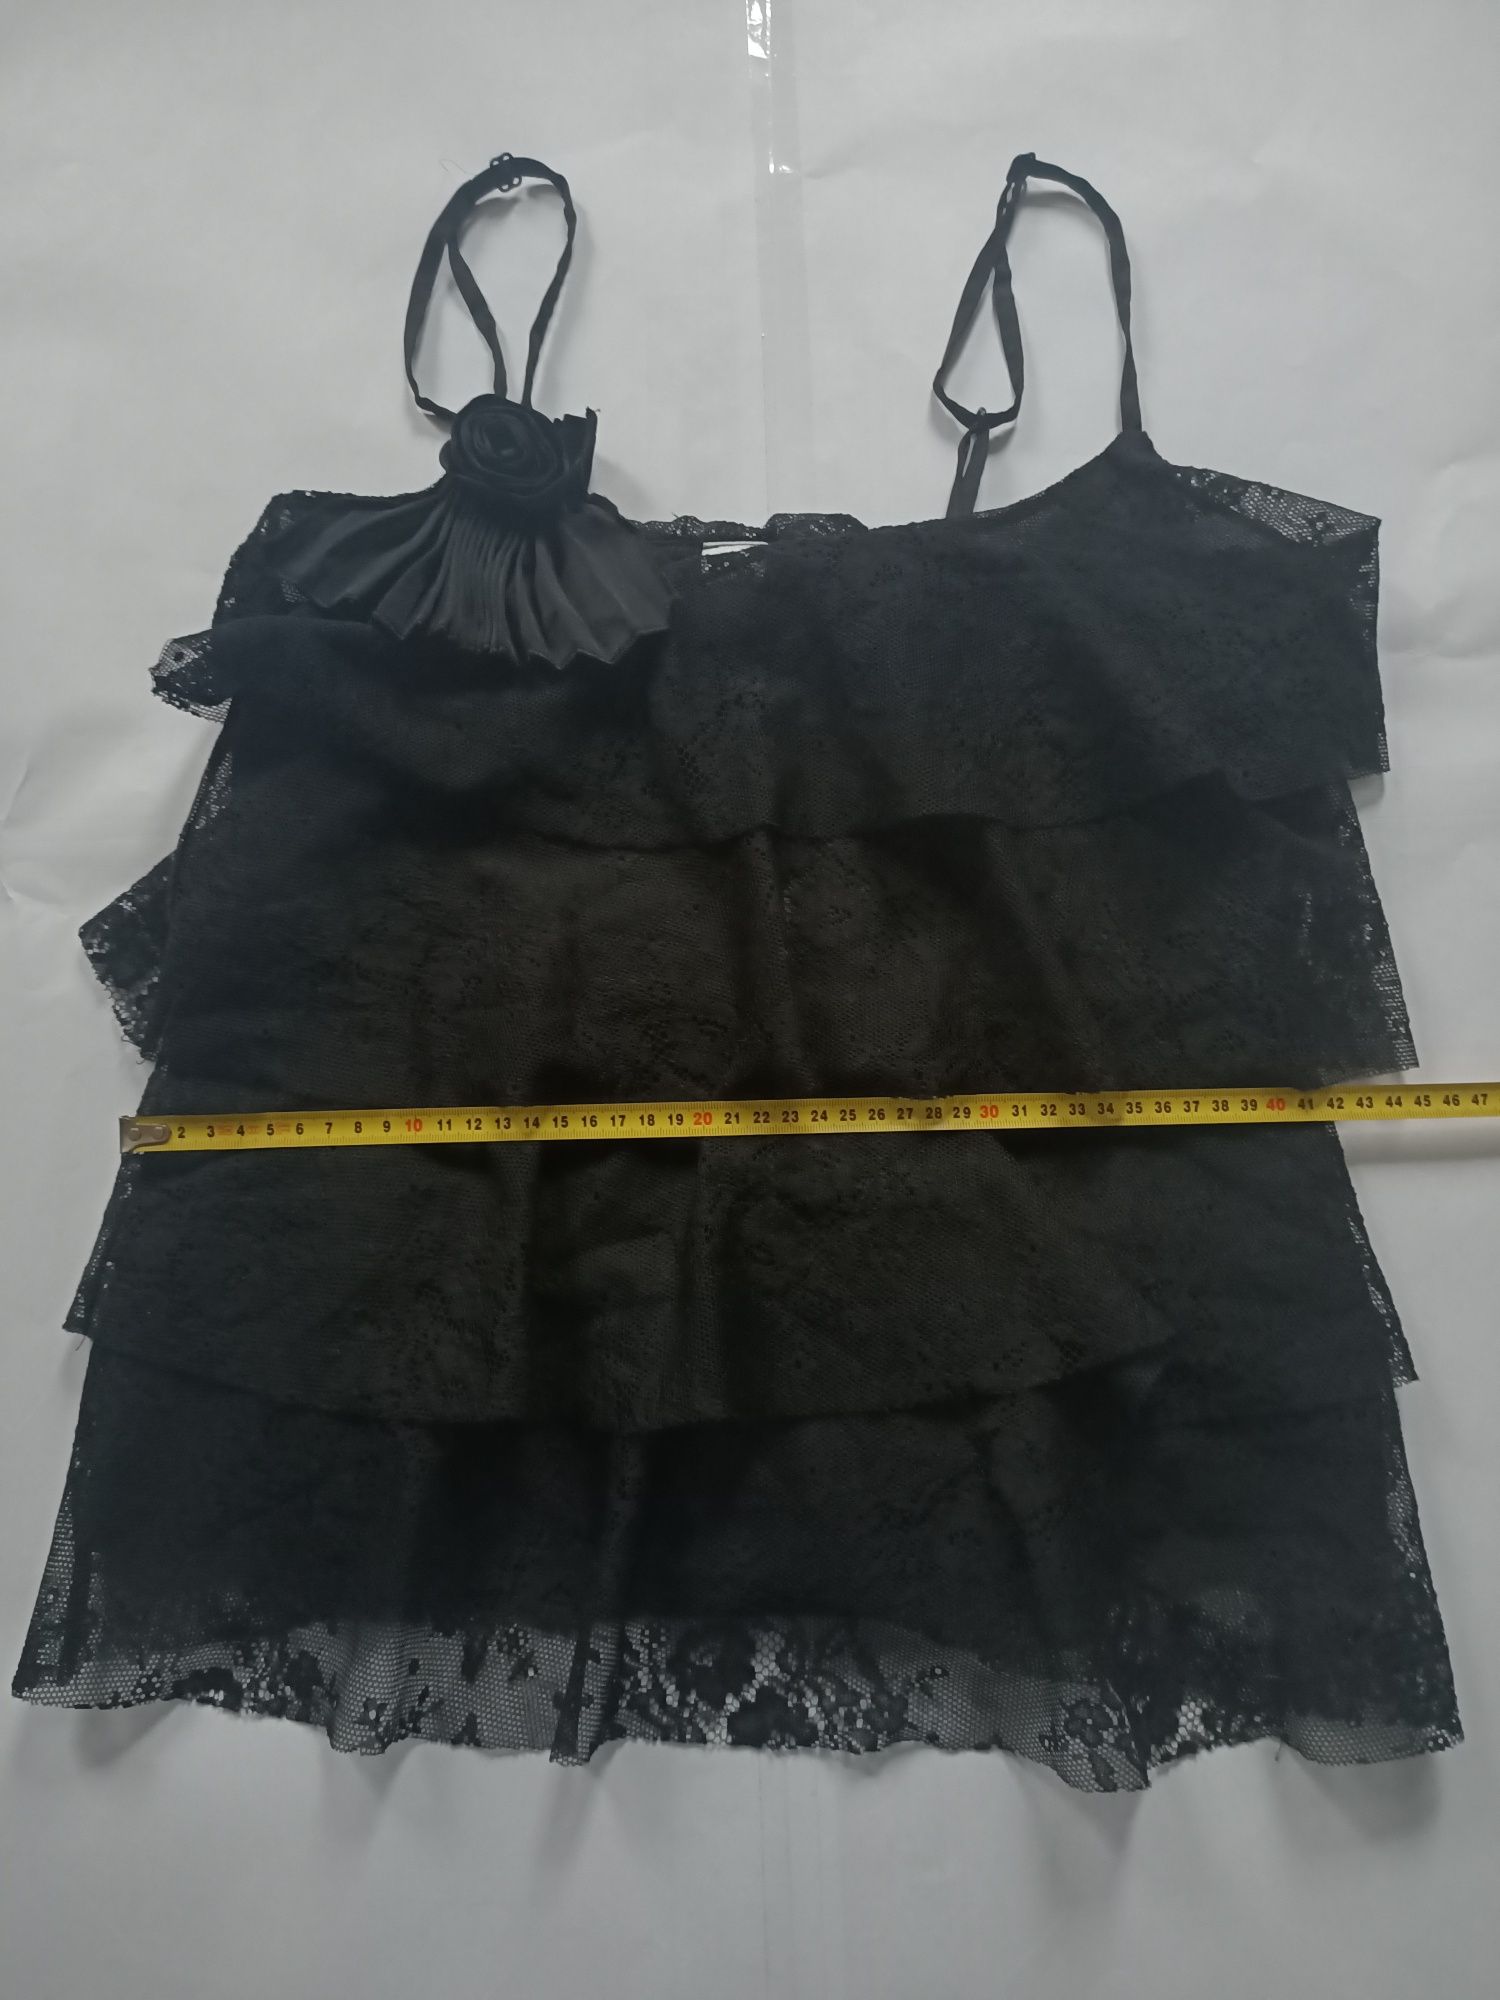 Sukienka/Top imprezowy czarny rozmiar M